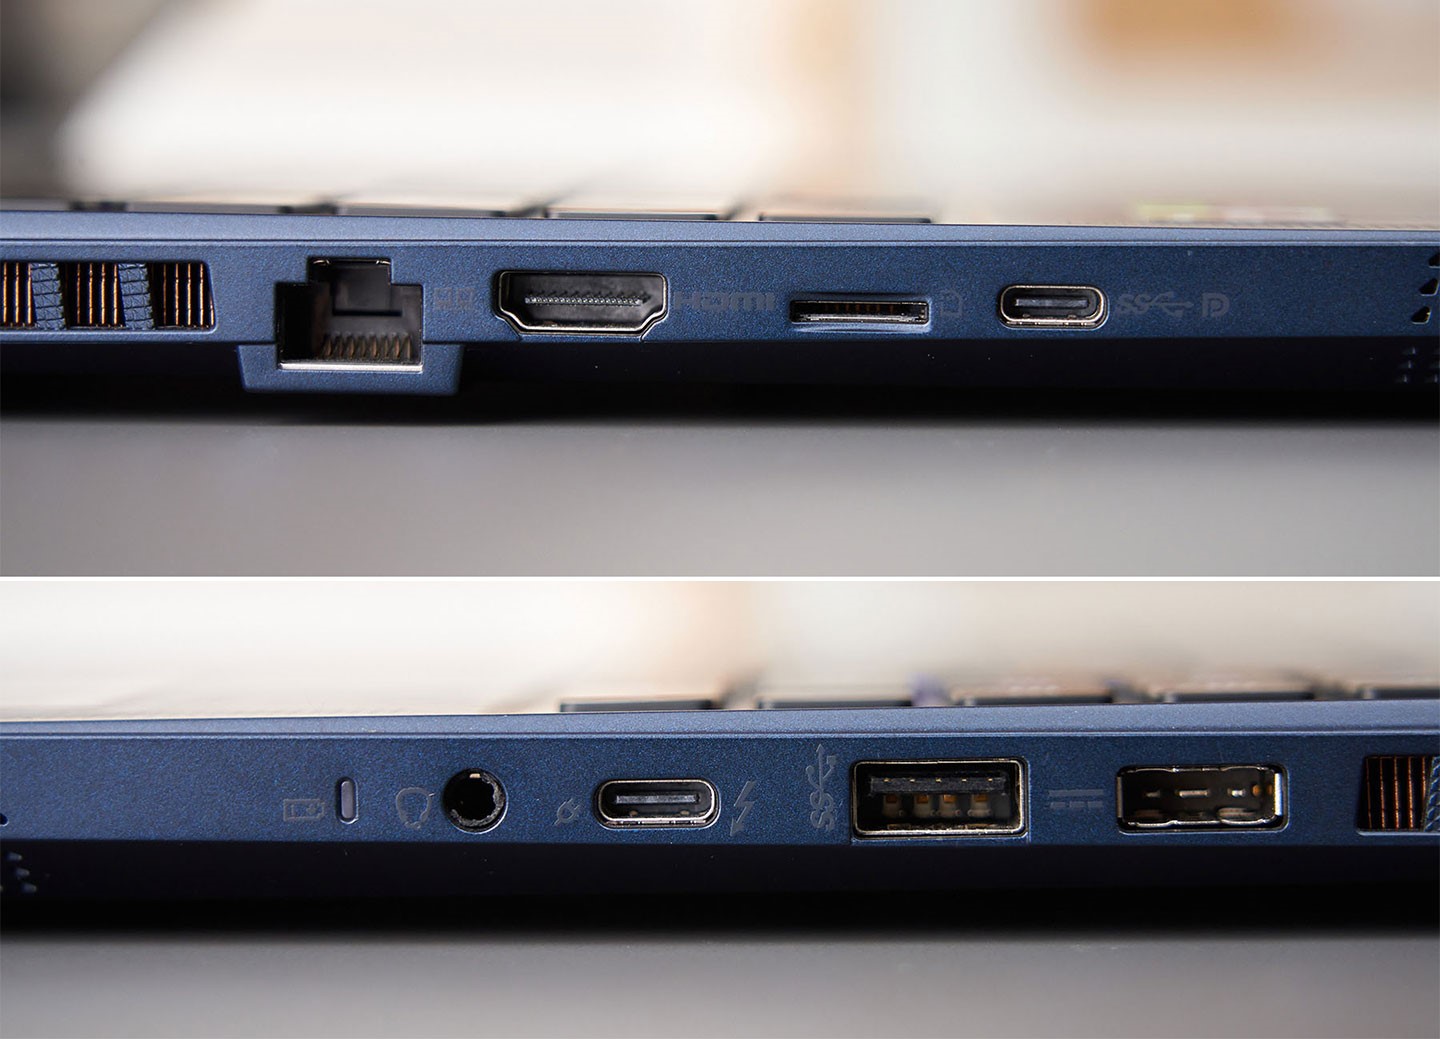 機身左側（圖上）配置了 2.5 GbE 的 RJ-45 網路接口、HDMI 2.1 埠、micro SD 讀卡槽、支援 DP 視訊輸出的 USB 3.2 Gen2 C 埠；機身右側（圖下）則配置了 3.5 mm 的耳機/麥克風接口、高速多功能的 Thunderbolt 4 接口、USB 3.2 Gen1 A 埠與方型電源接口。